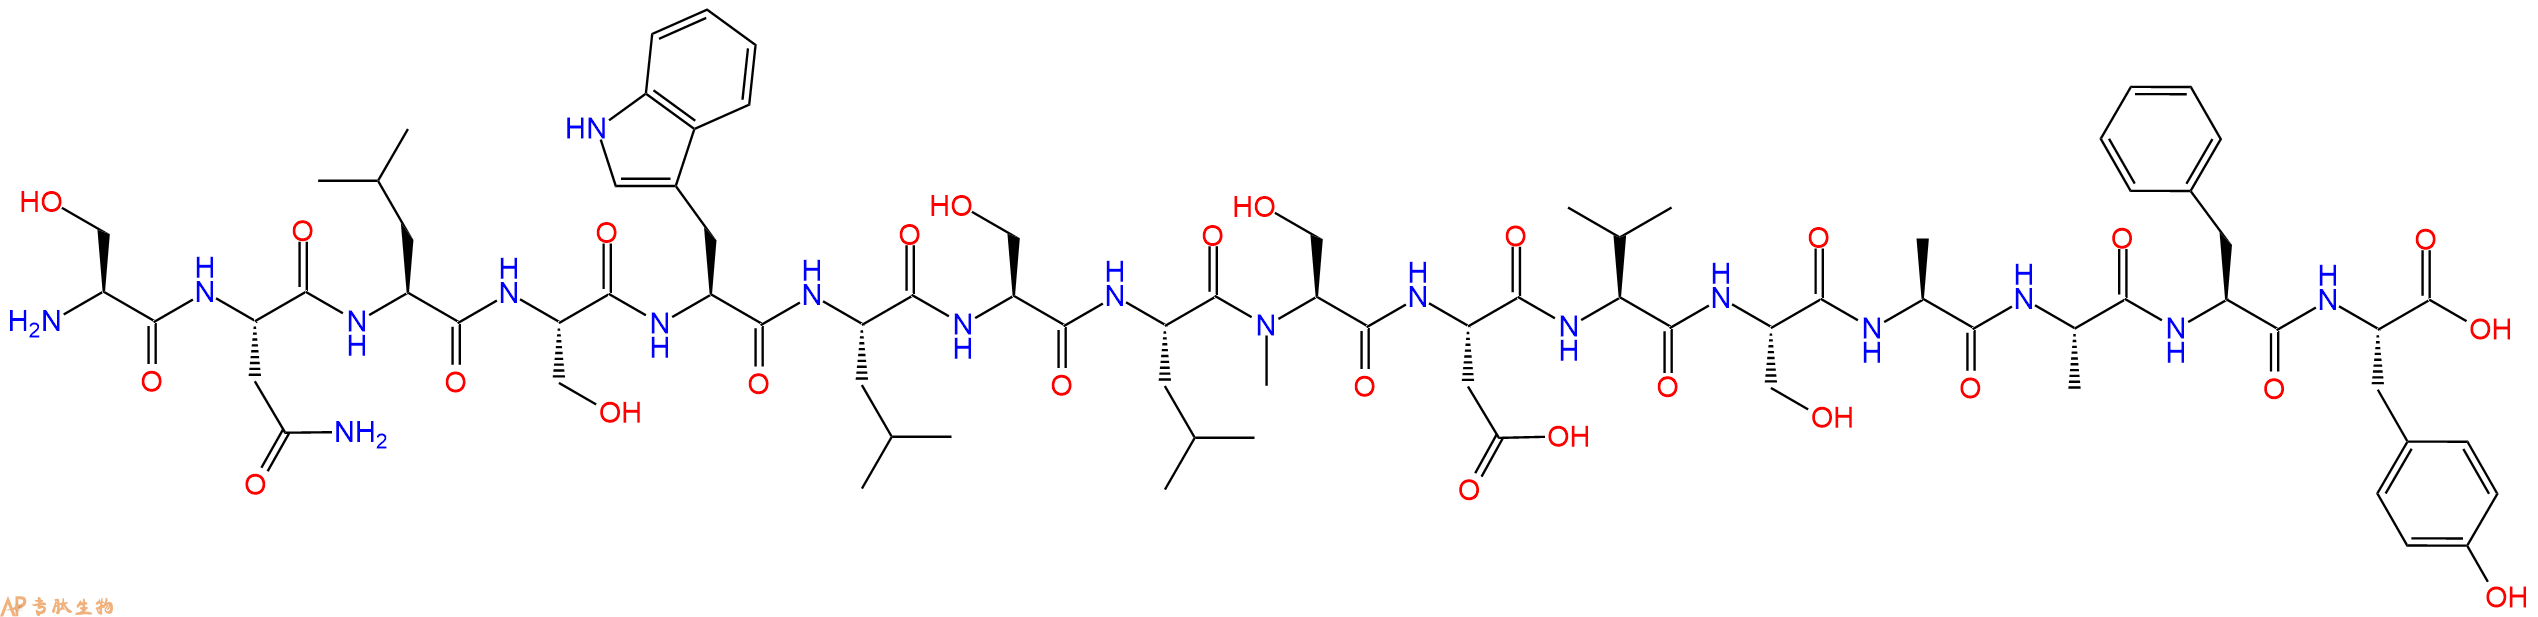 专肽生物产品H2N-Ser-Asn-Leu-Ser-Trp-Leu-Ser-Leu-(NMe)Ser-Asp-V